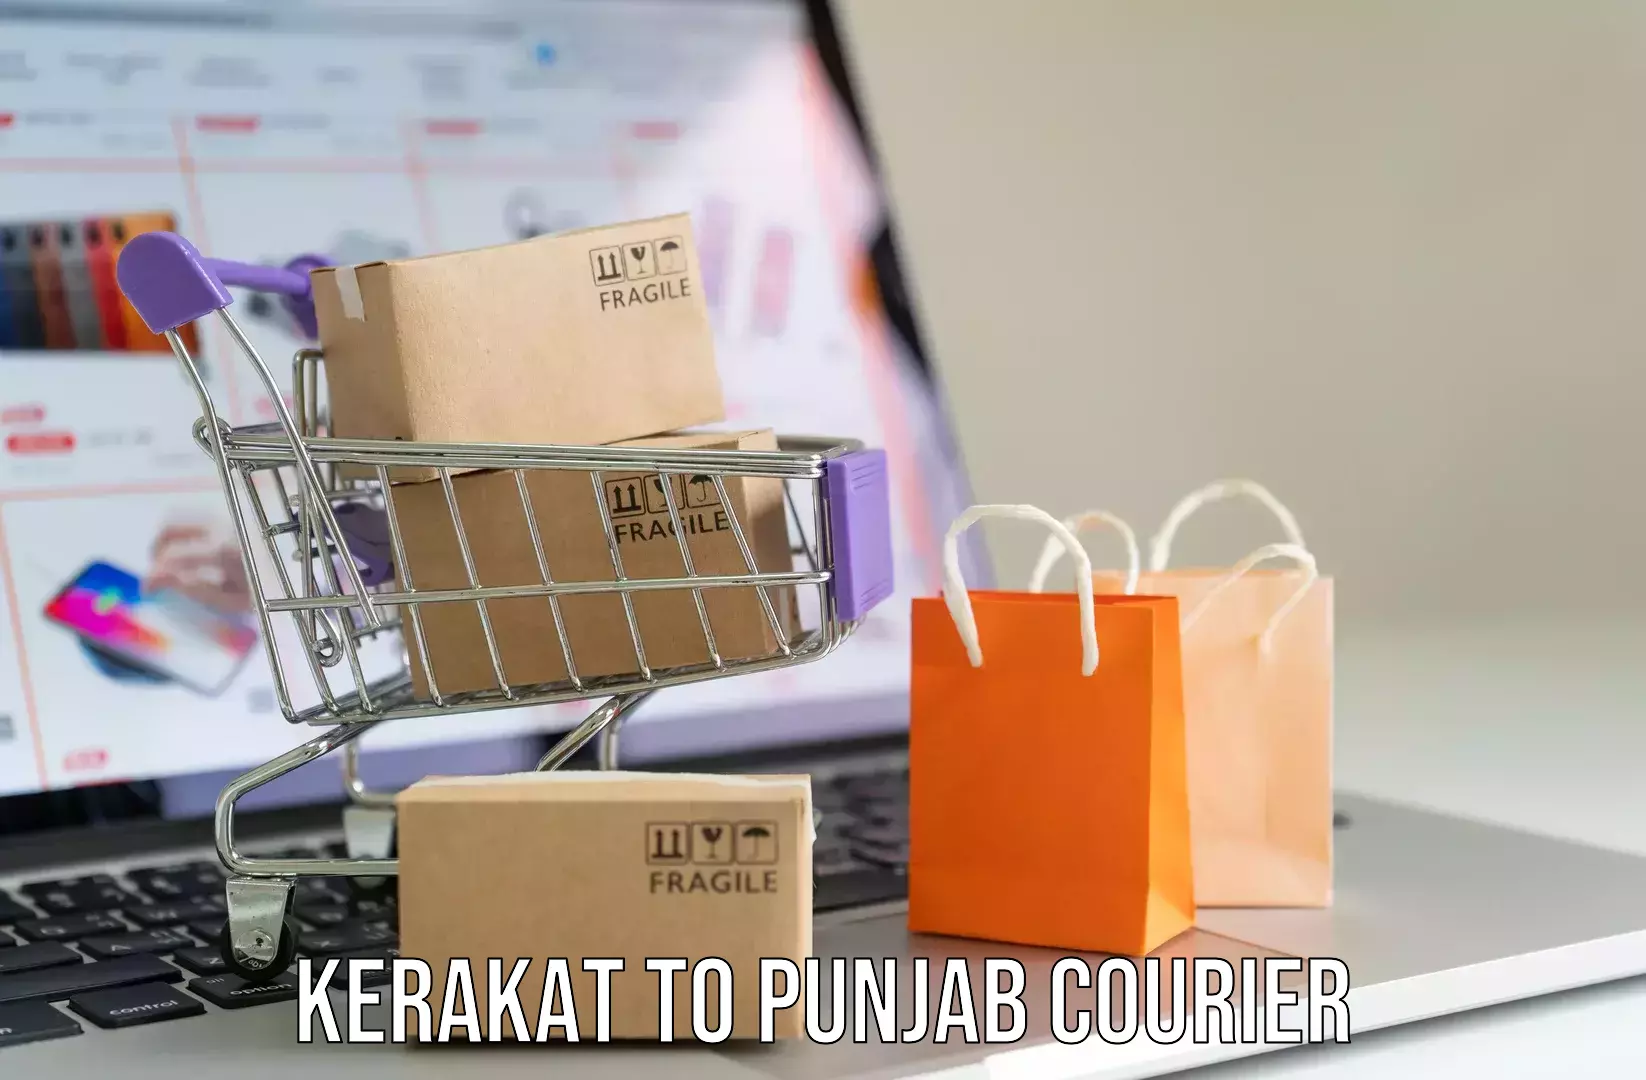 Luggage shipment tracking Kerakat to Punjab